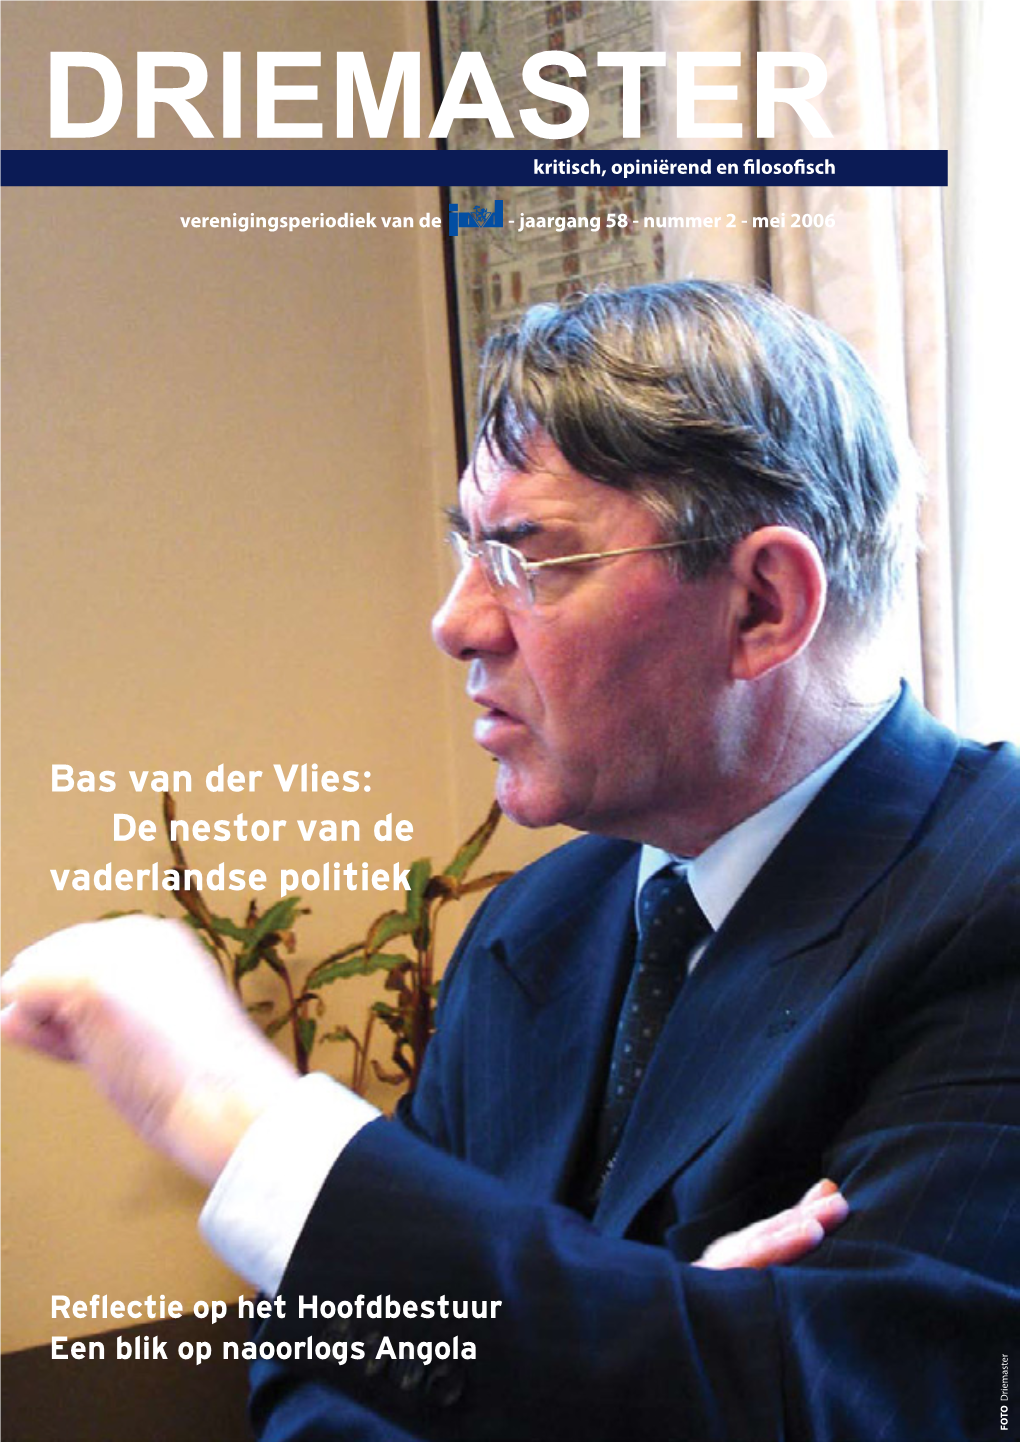 Bas Van Der Vlies: De Nestor Van De Vaderlandse Politiek